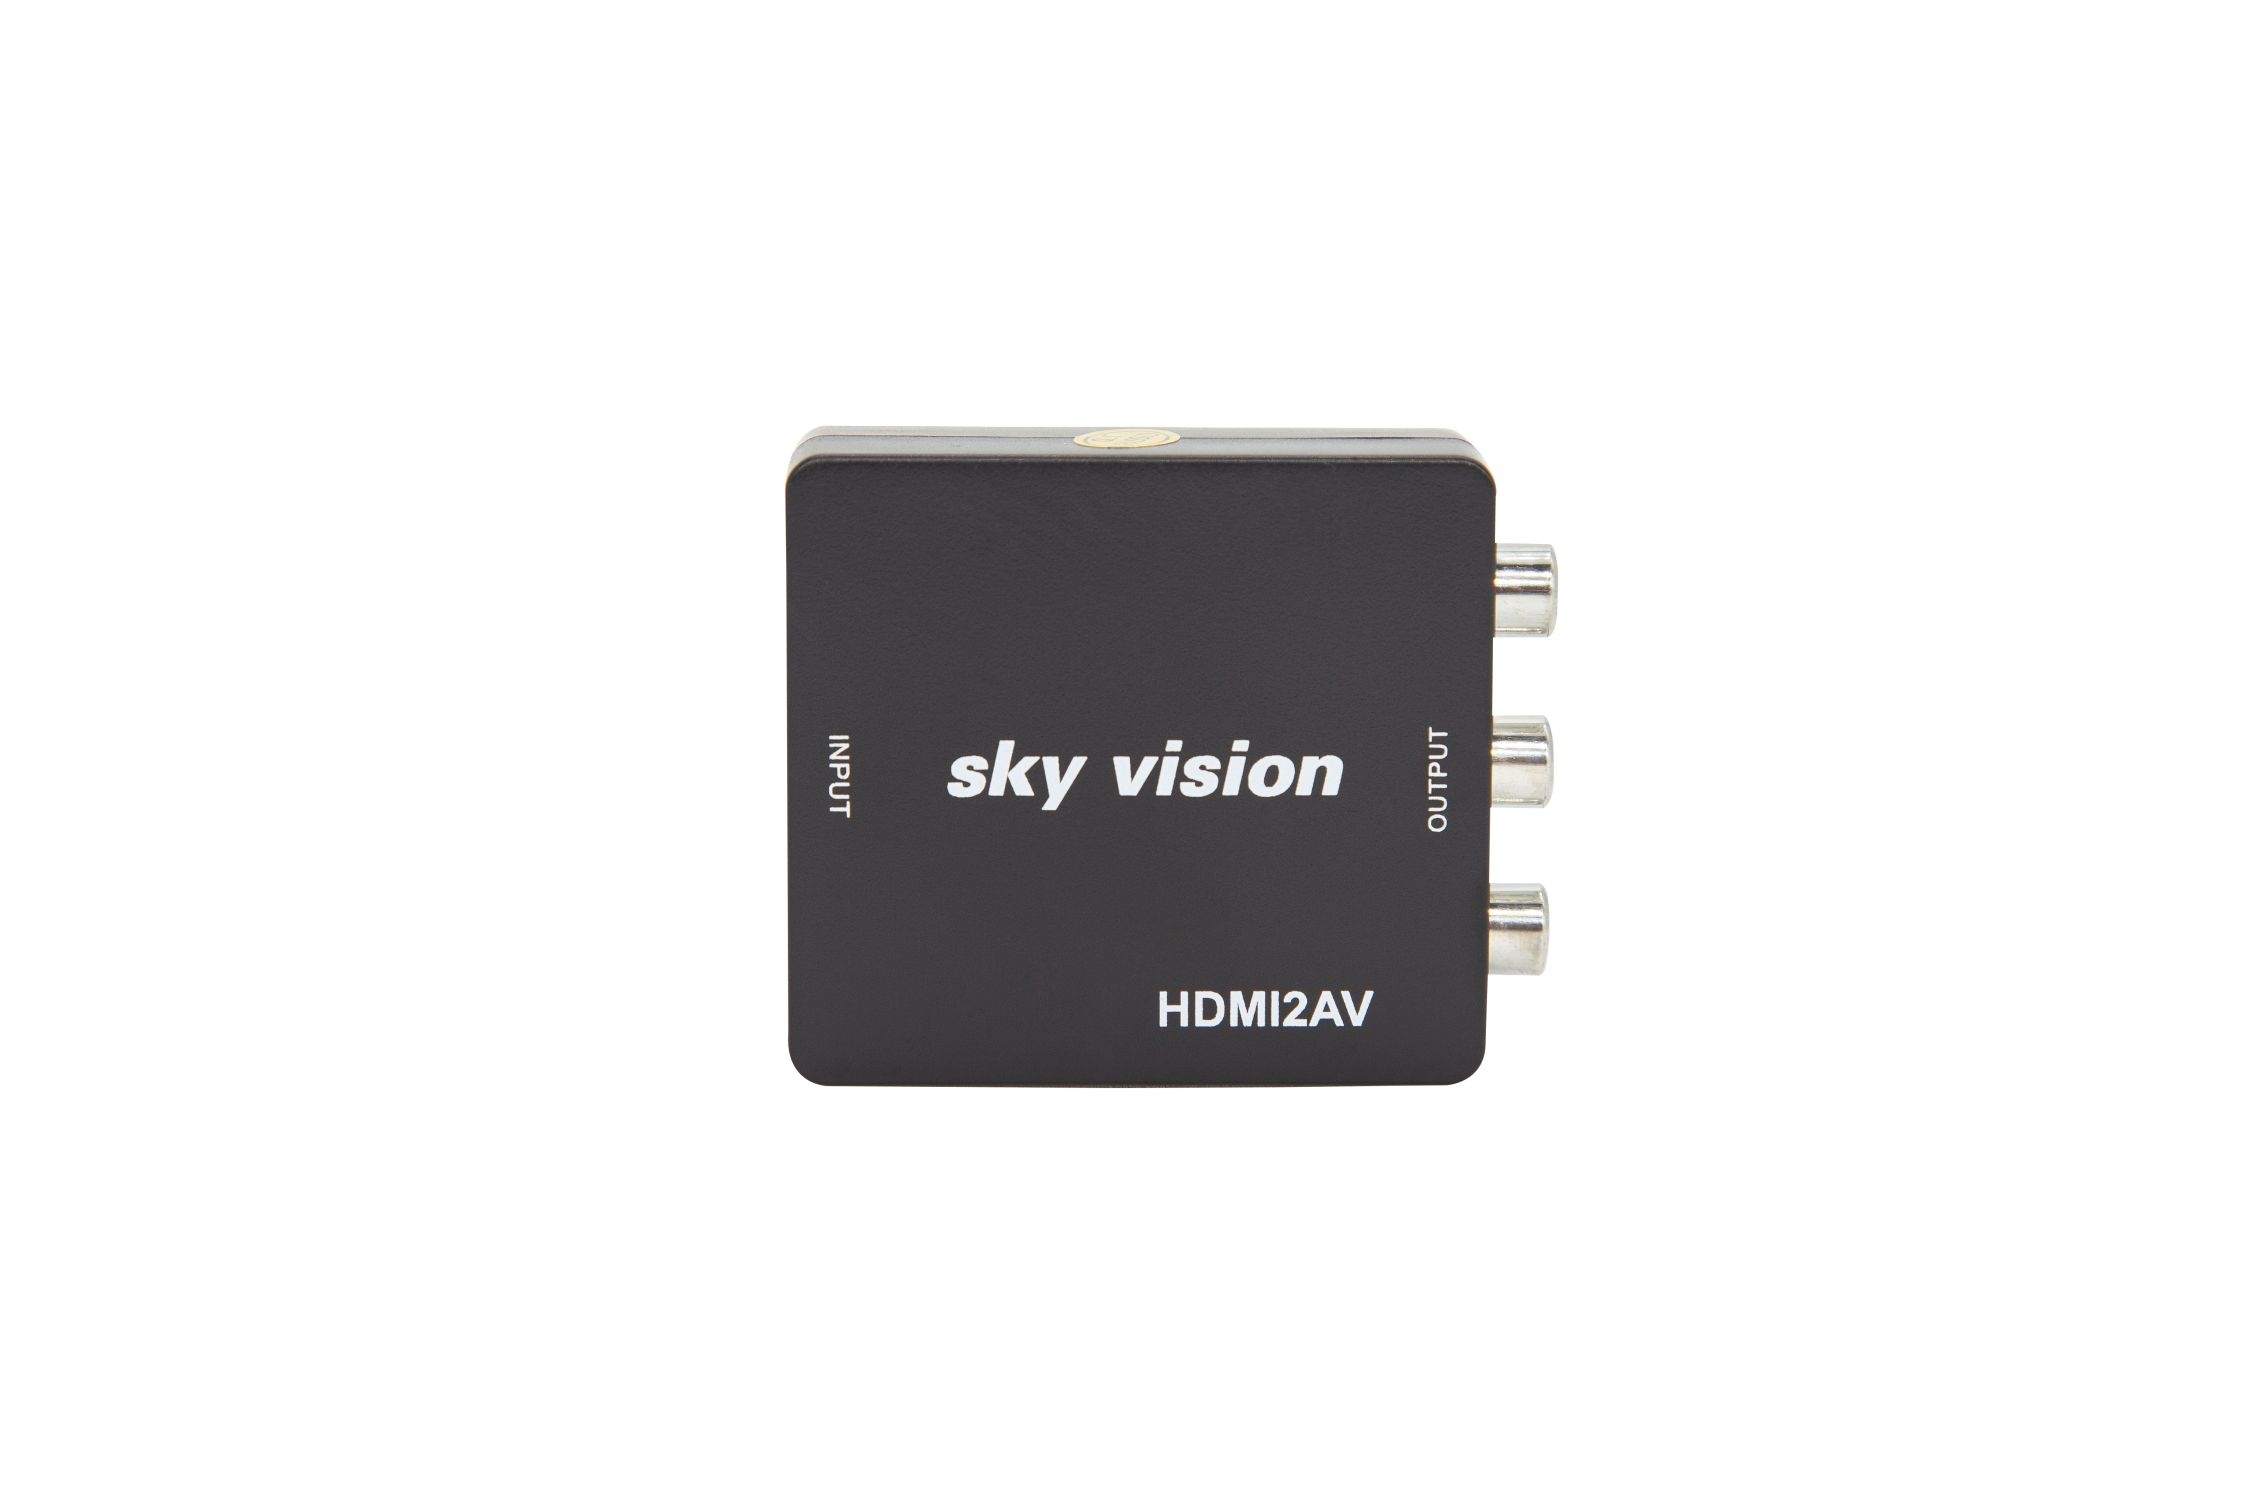 SKY VISION V1116 zu HDMI FBAS-Konverter